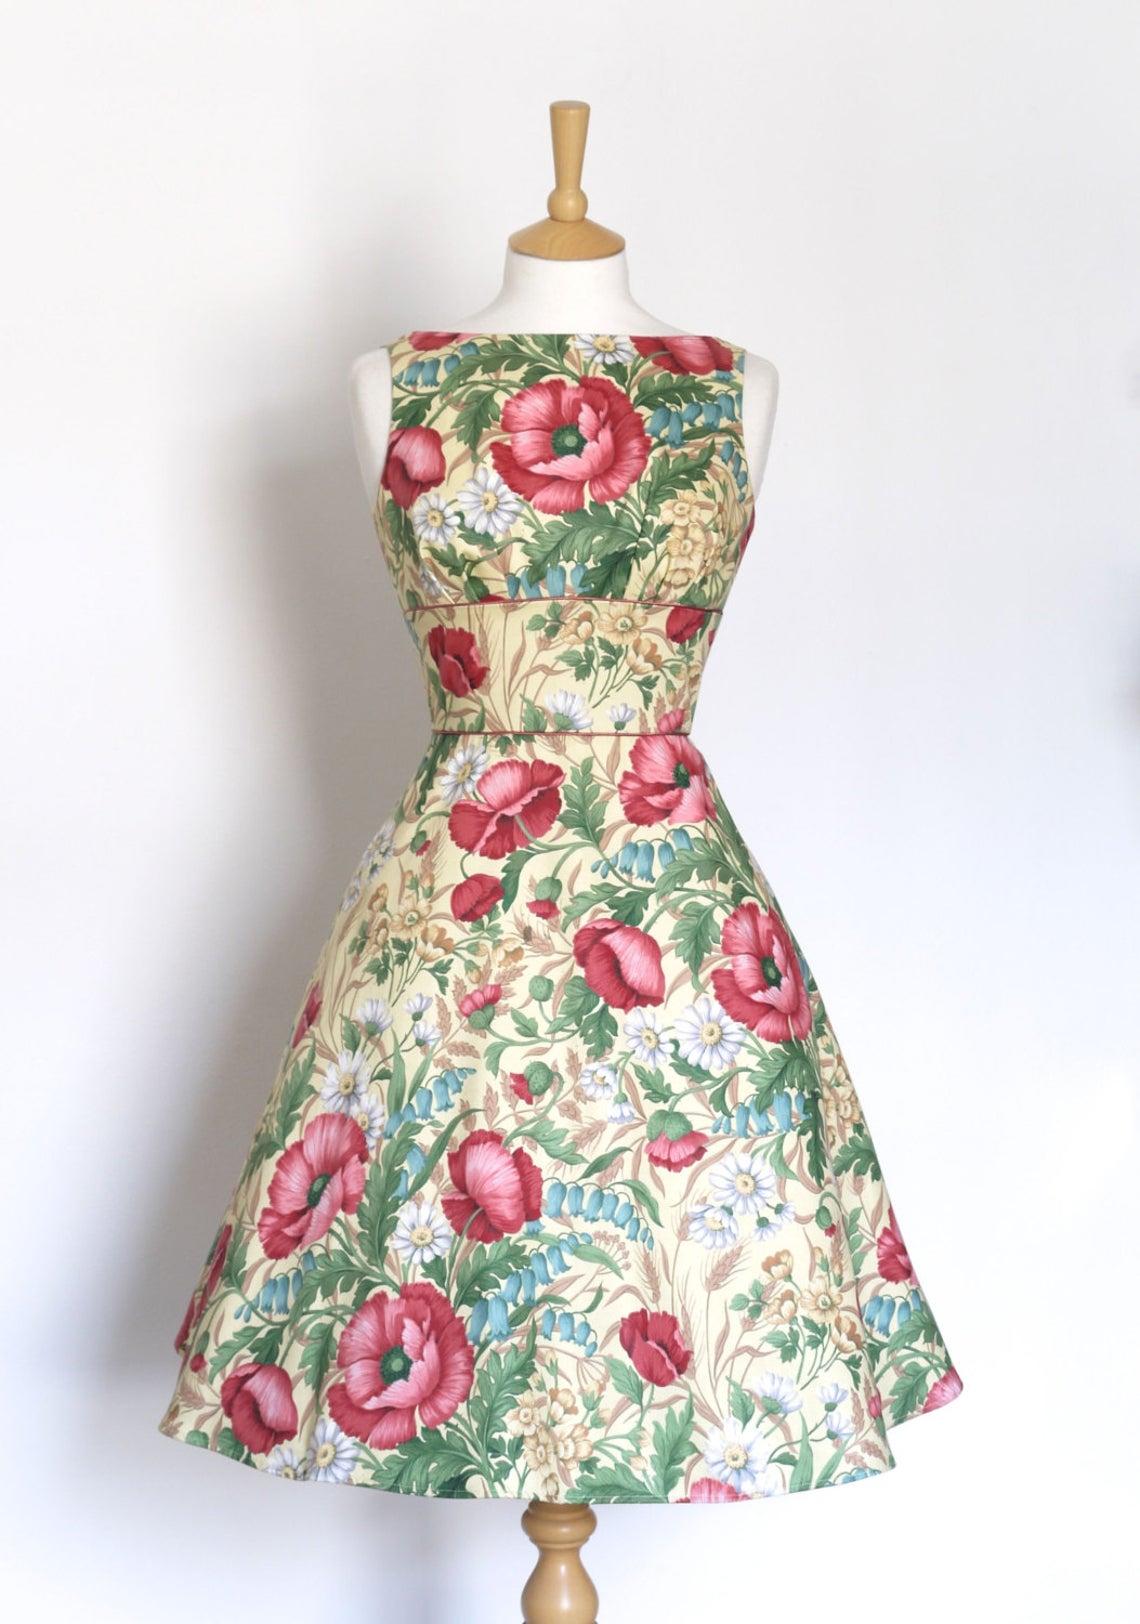 Size UK 6 - Poppy and Daisy Print Tiffany Tea Dress